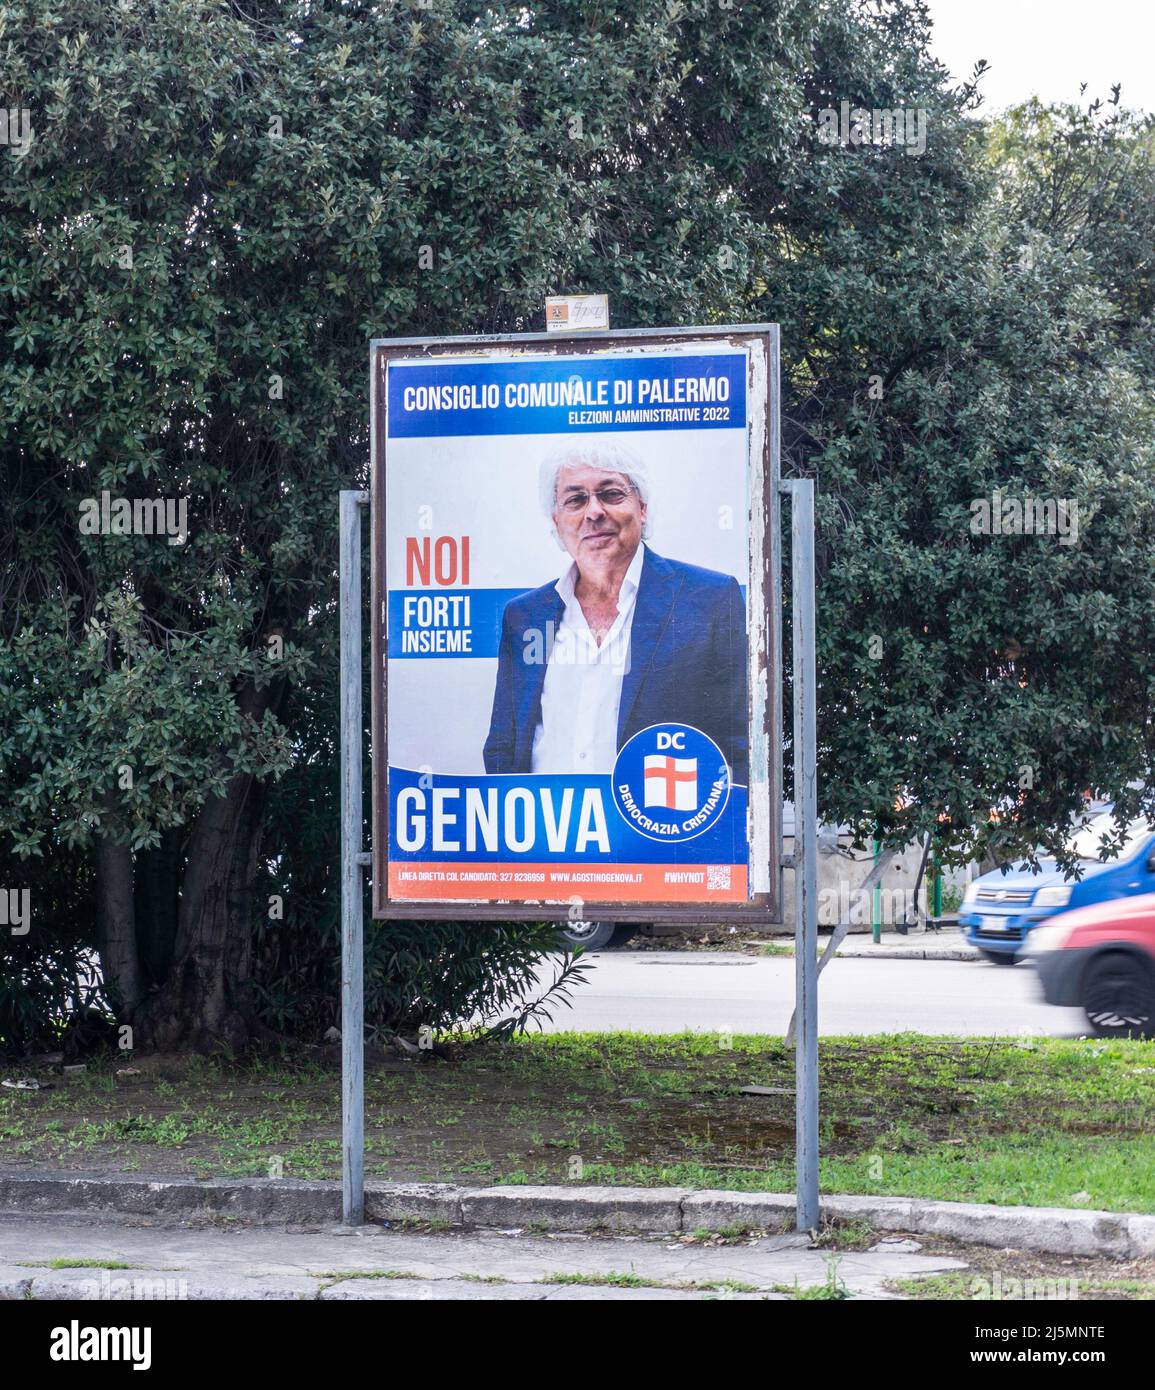 Un cartel electoral para Agostino Genova Candidato a las elecciones municipales de 2022 en Palermo, Sicilia, Italia. Foto de stock